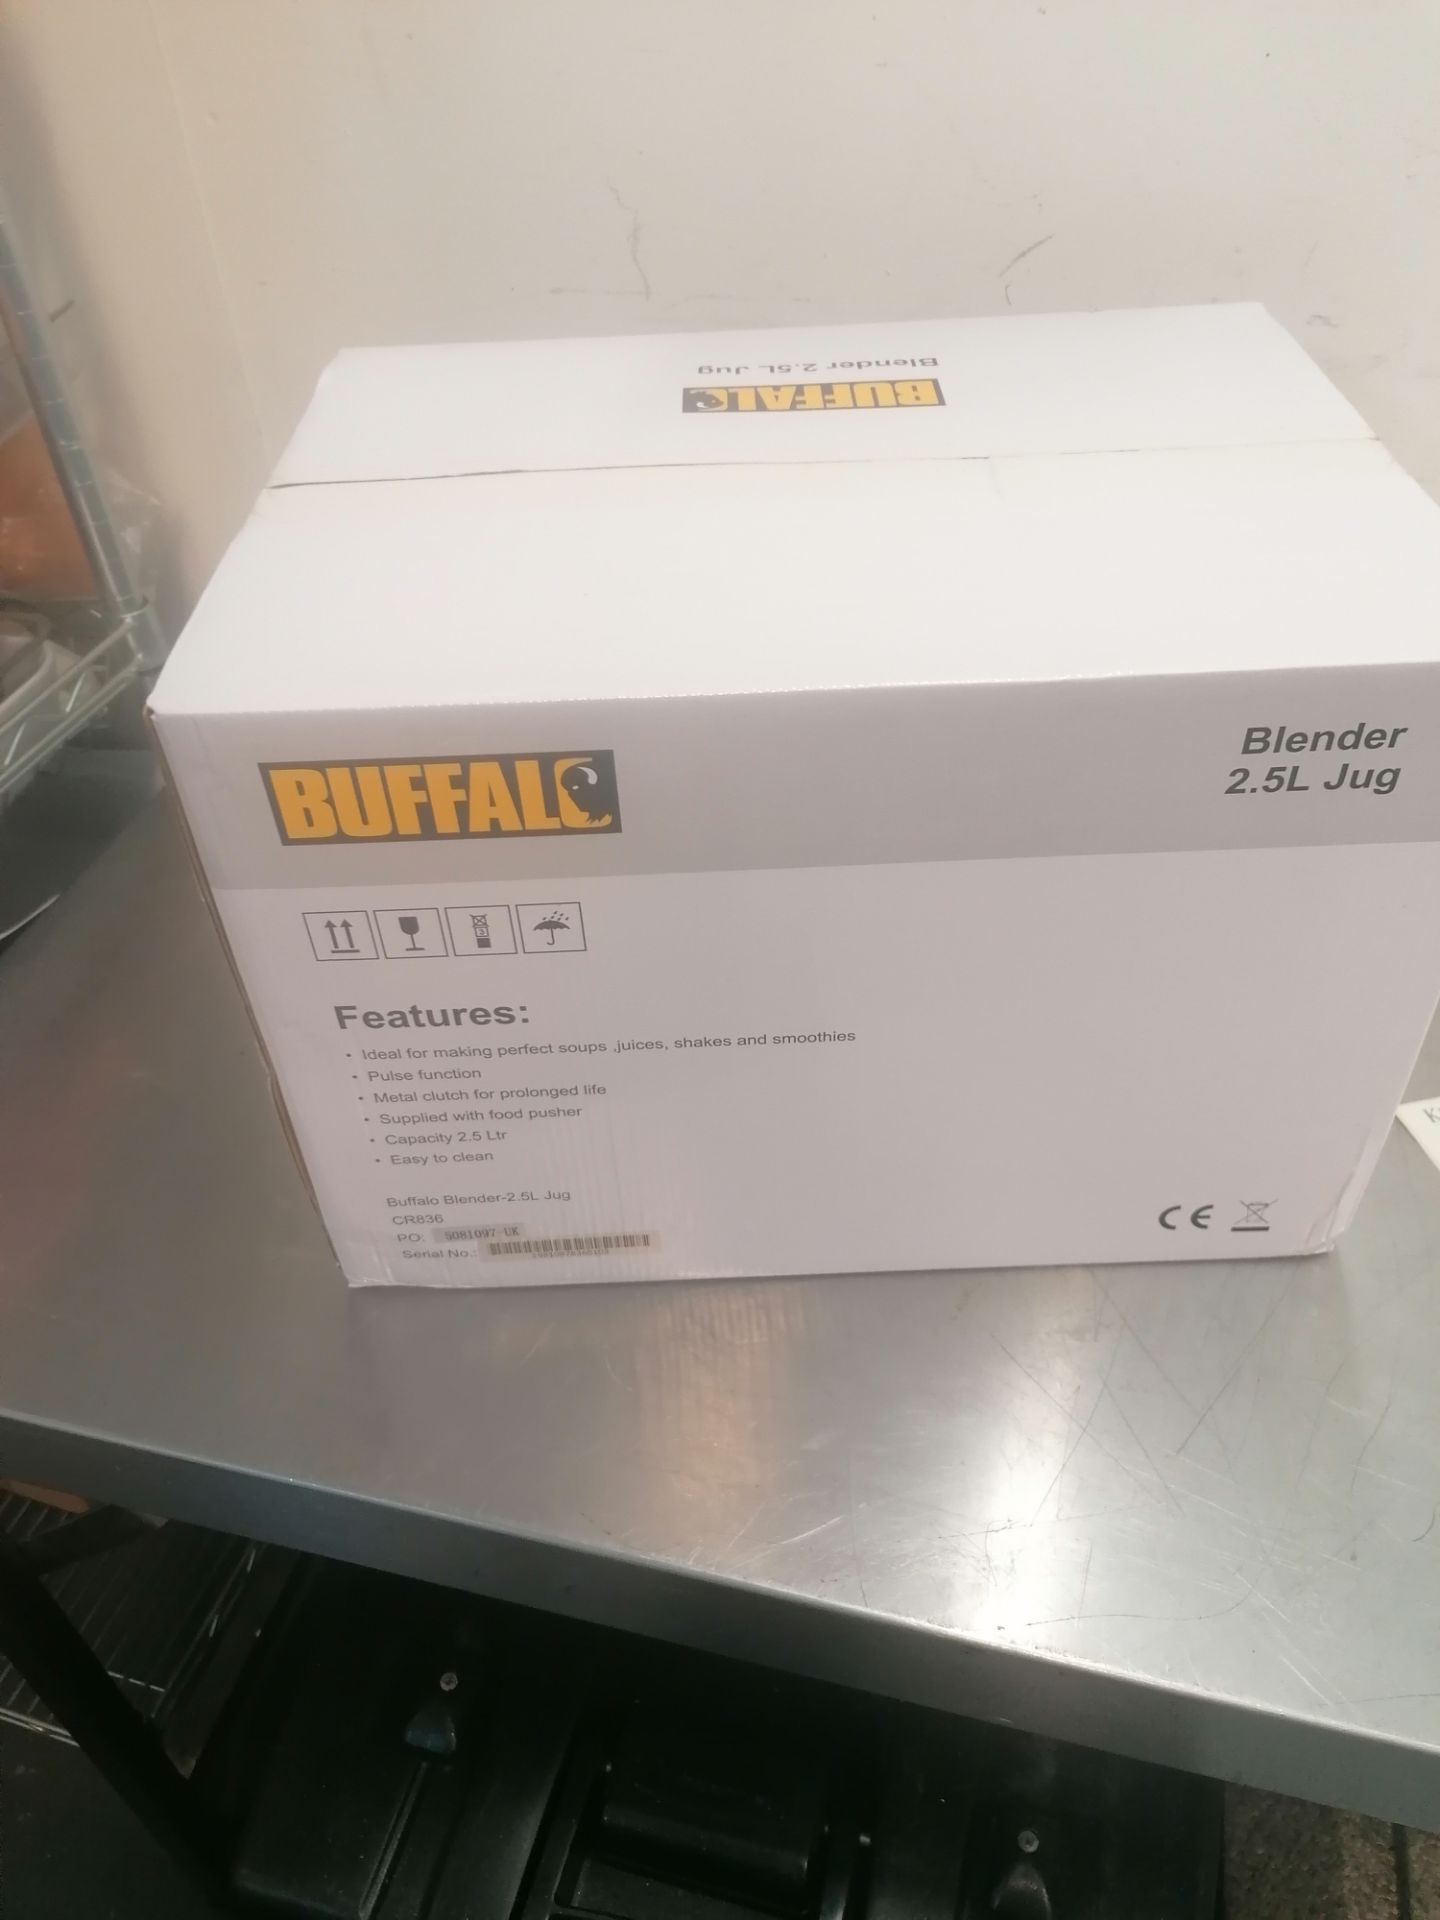 Buffalo MOCR836 blender 2.5 L new boxed, Serial No. 1.9811E+12 - Image 3 of 4